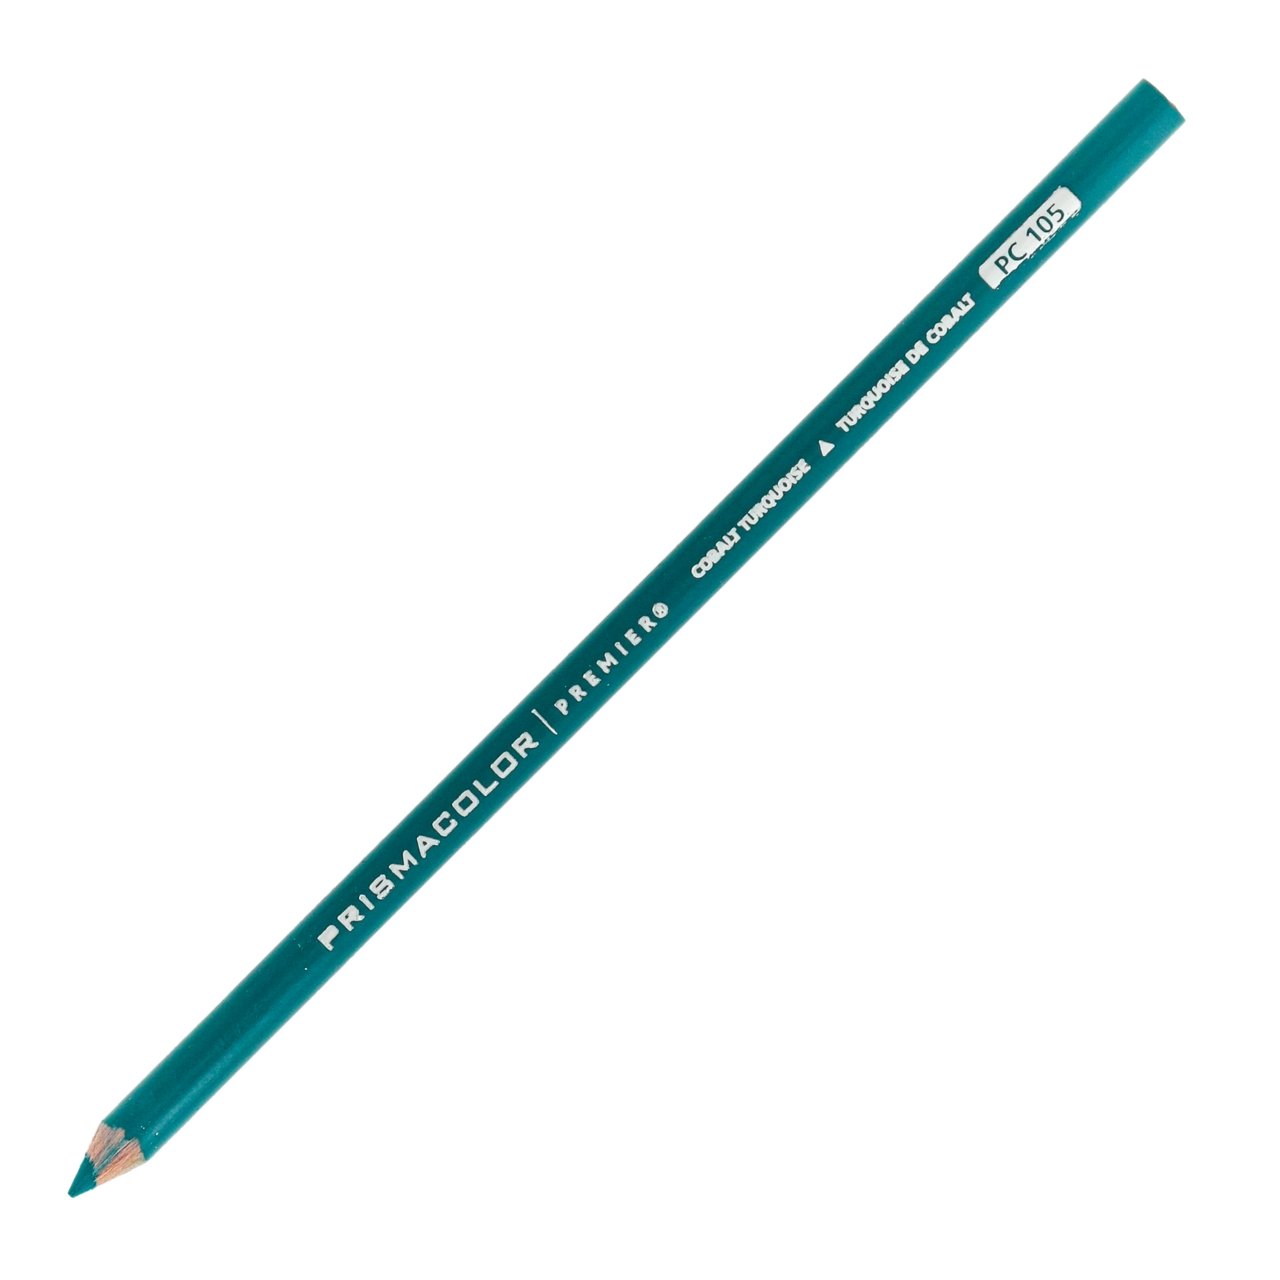 Prismacolor Premier Colored Pencil